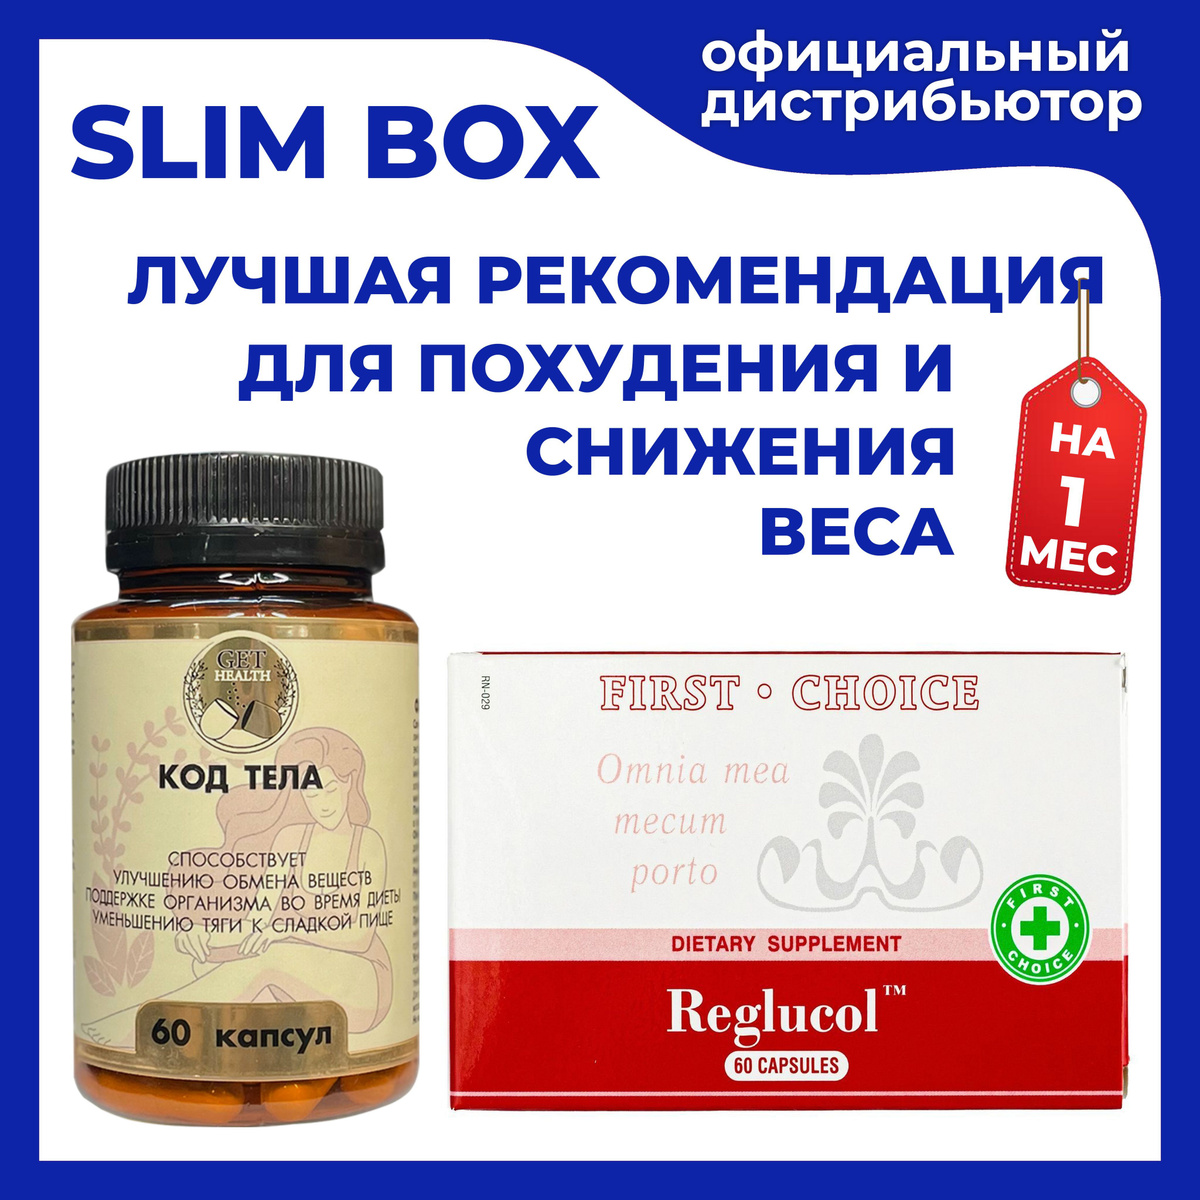 Slim Box - Программа снижения массы тела - Мультивитамины с L-карнитином Код Тела и Биодоступный хром Reglucol